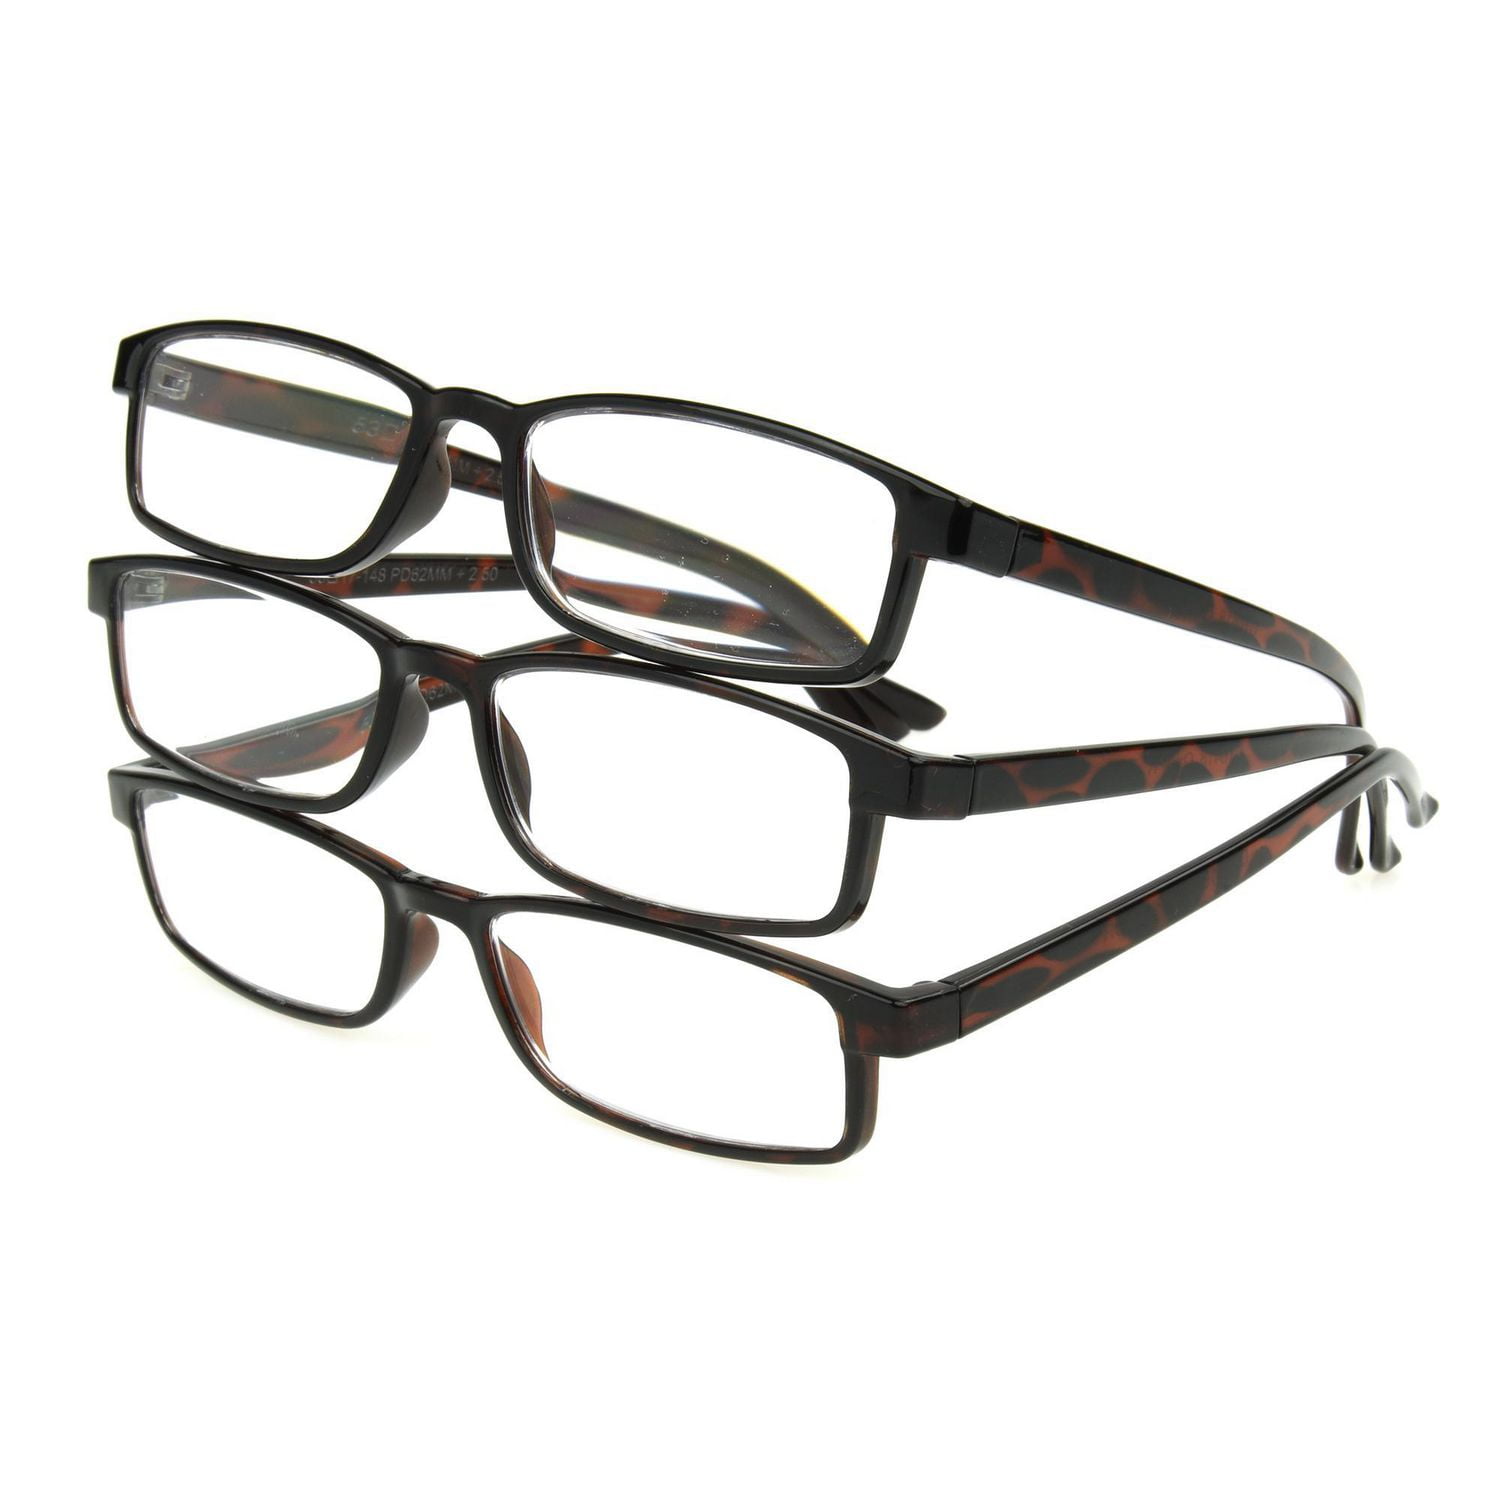 Foster Grant Tech Series +2.00 Reading Glasses Select Your Style Readers -  Conseil scolaire francophone de Terre-Neuve et Labrador